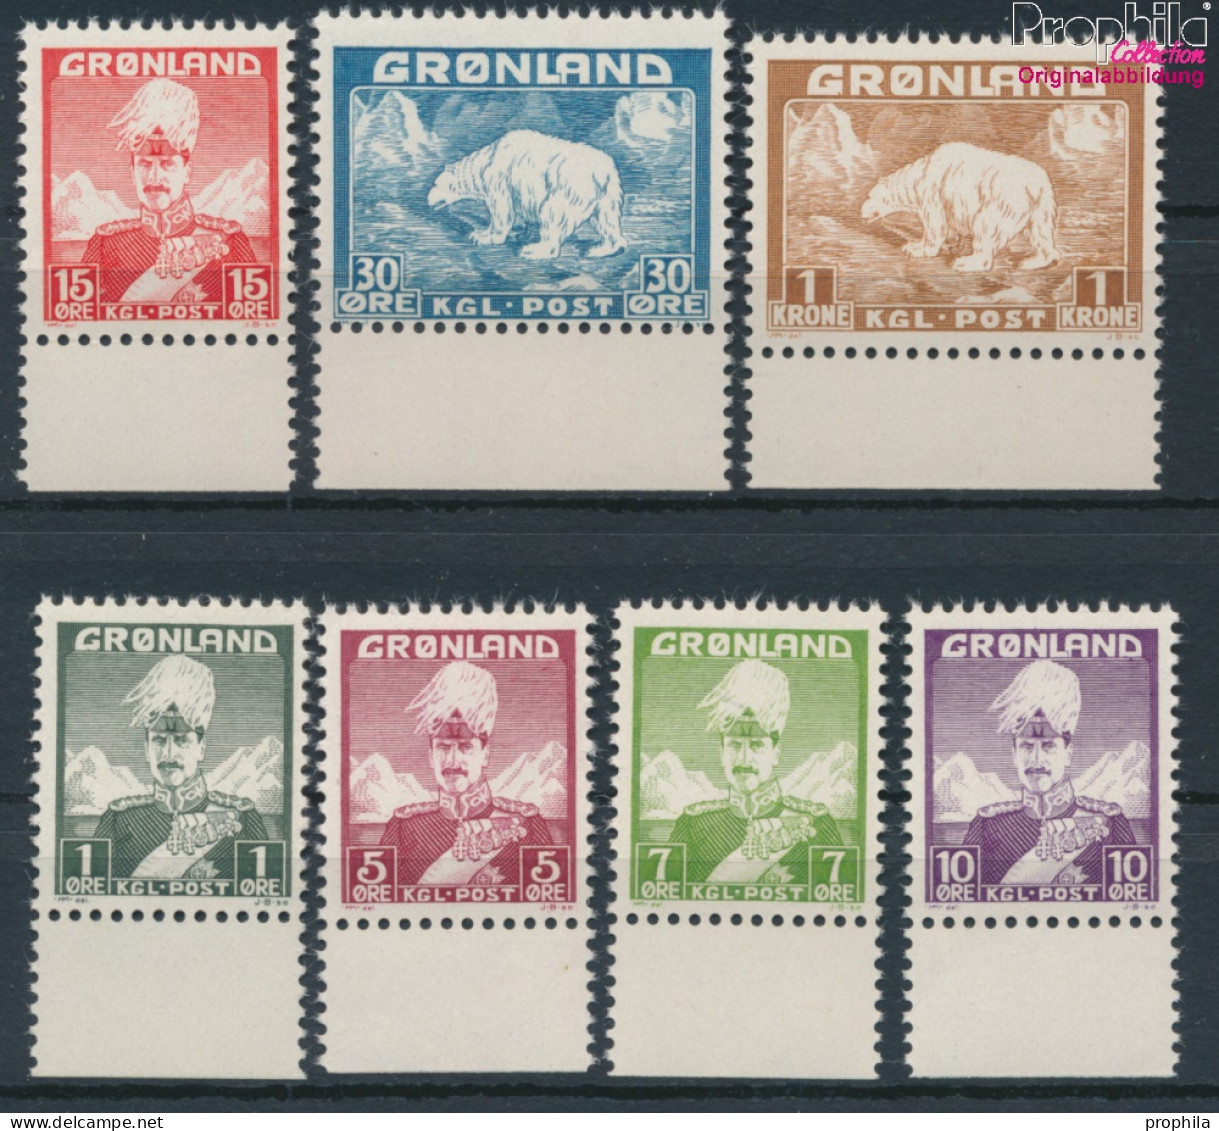 Dänemark - Grönland Postfrisch Christian X. 1938 König Christian X.  (10174213 - Usados